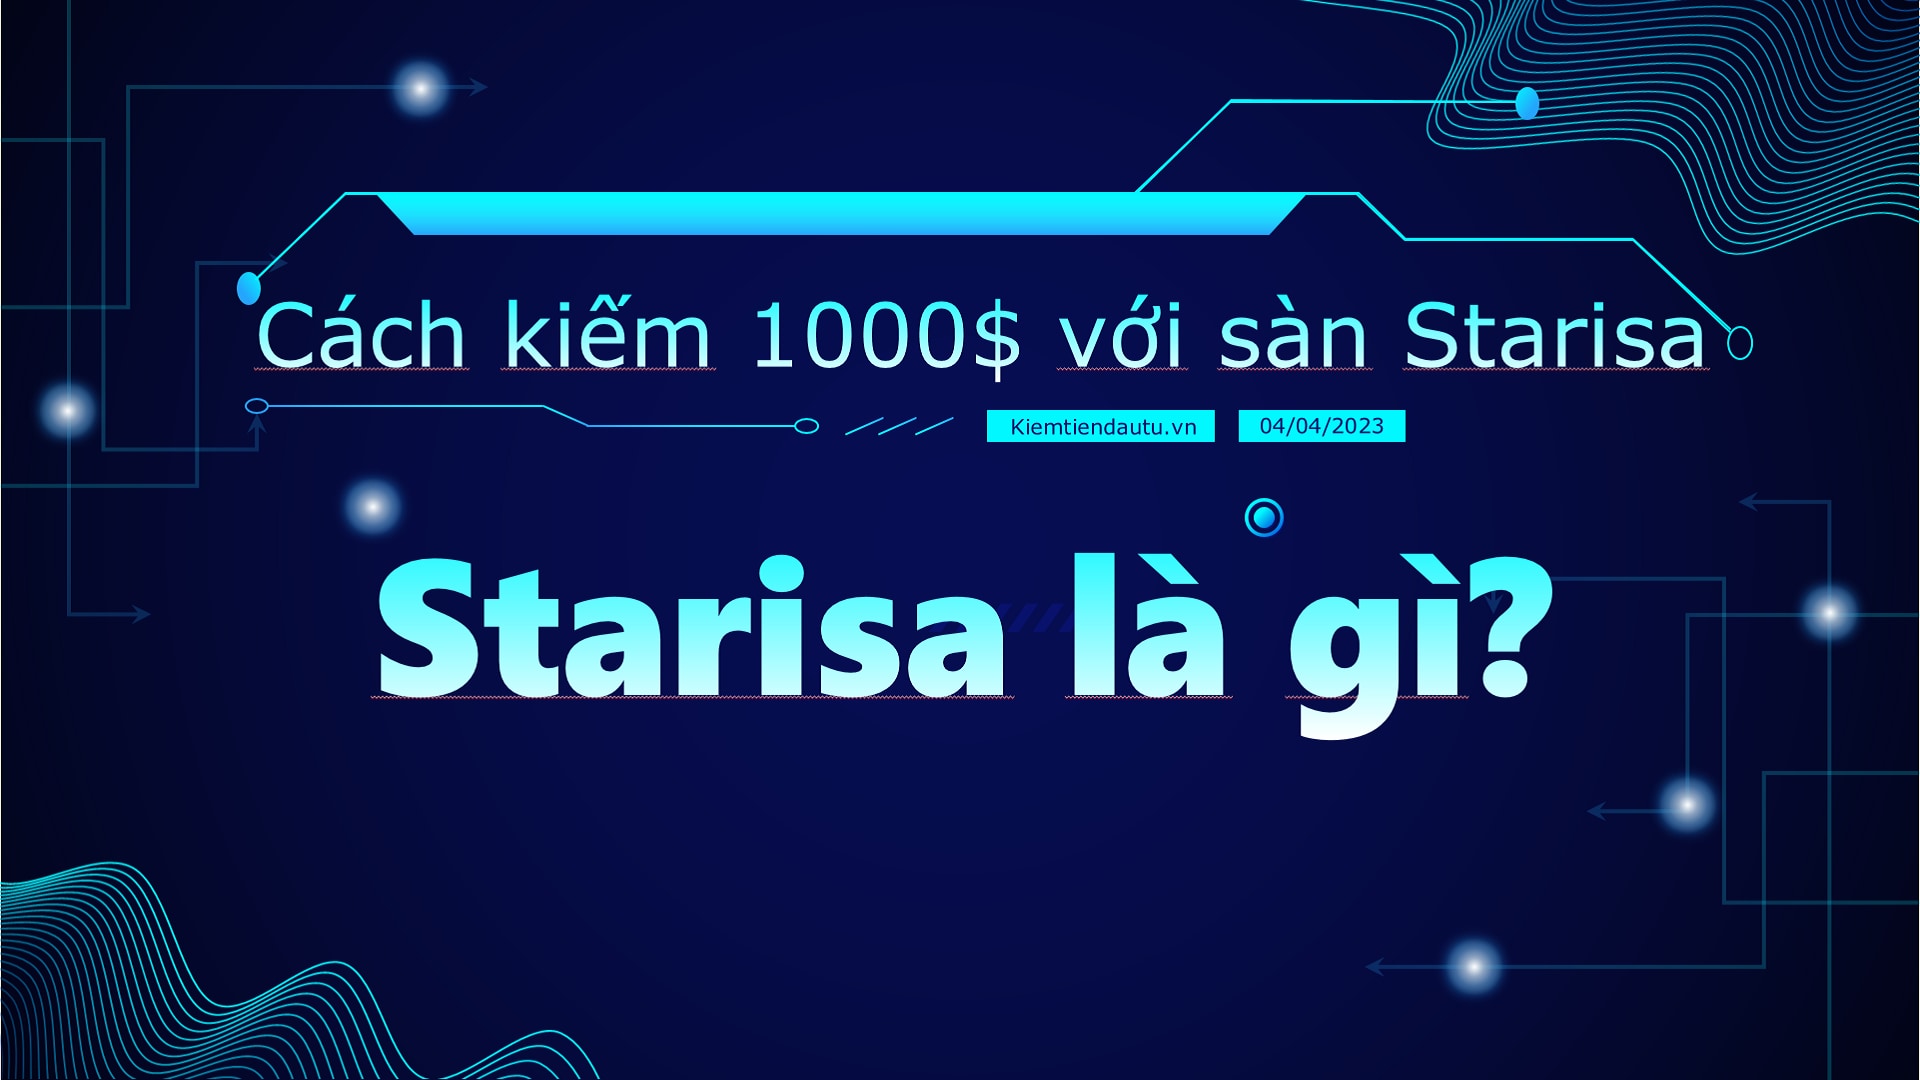 Starisa là gì?